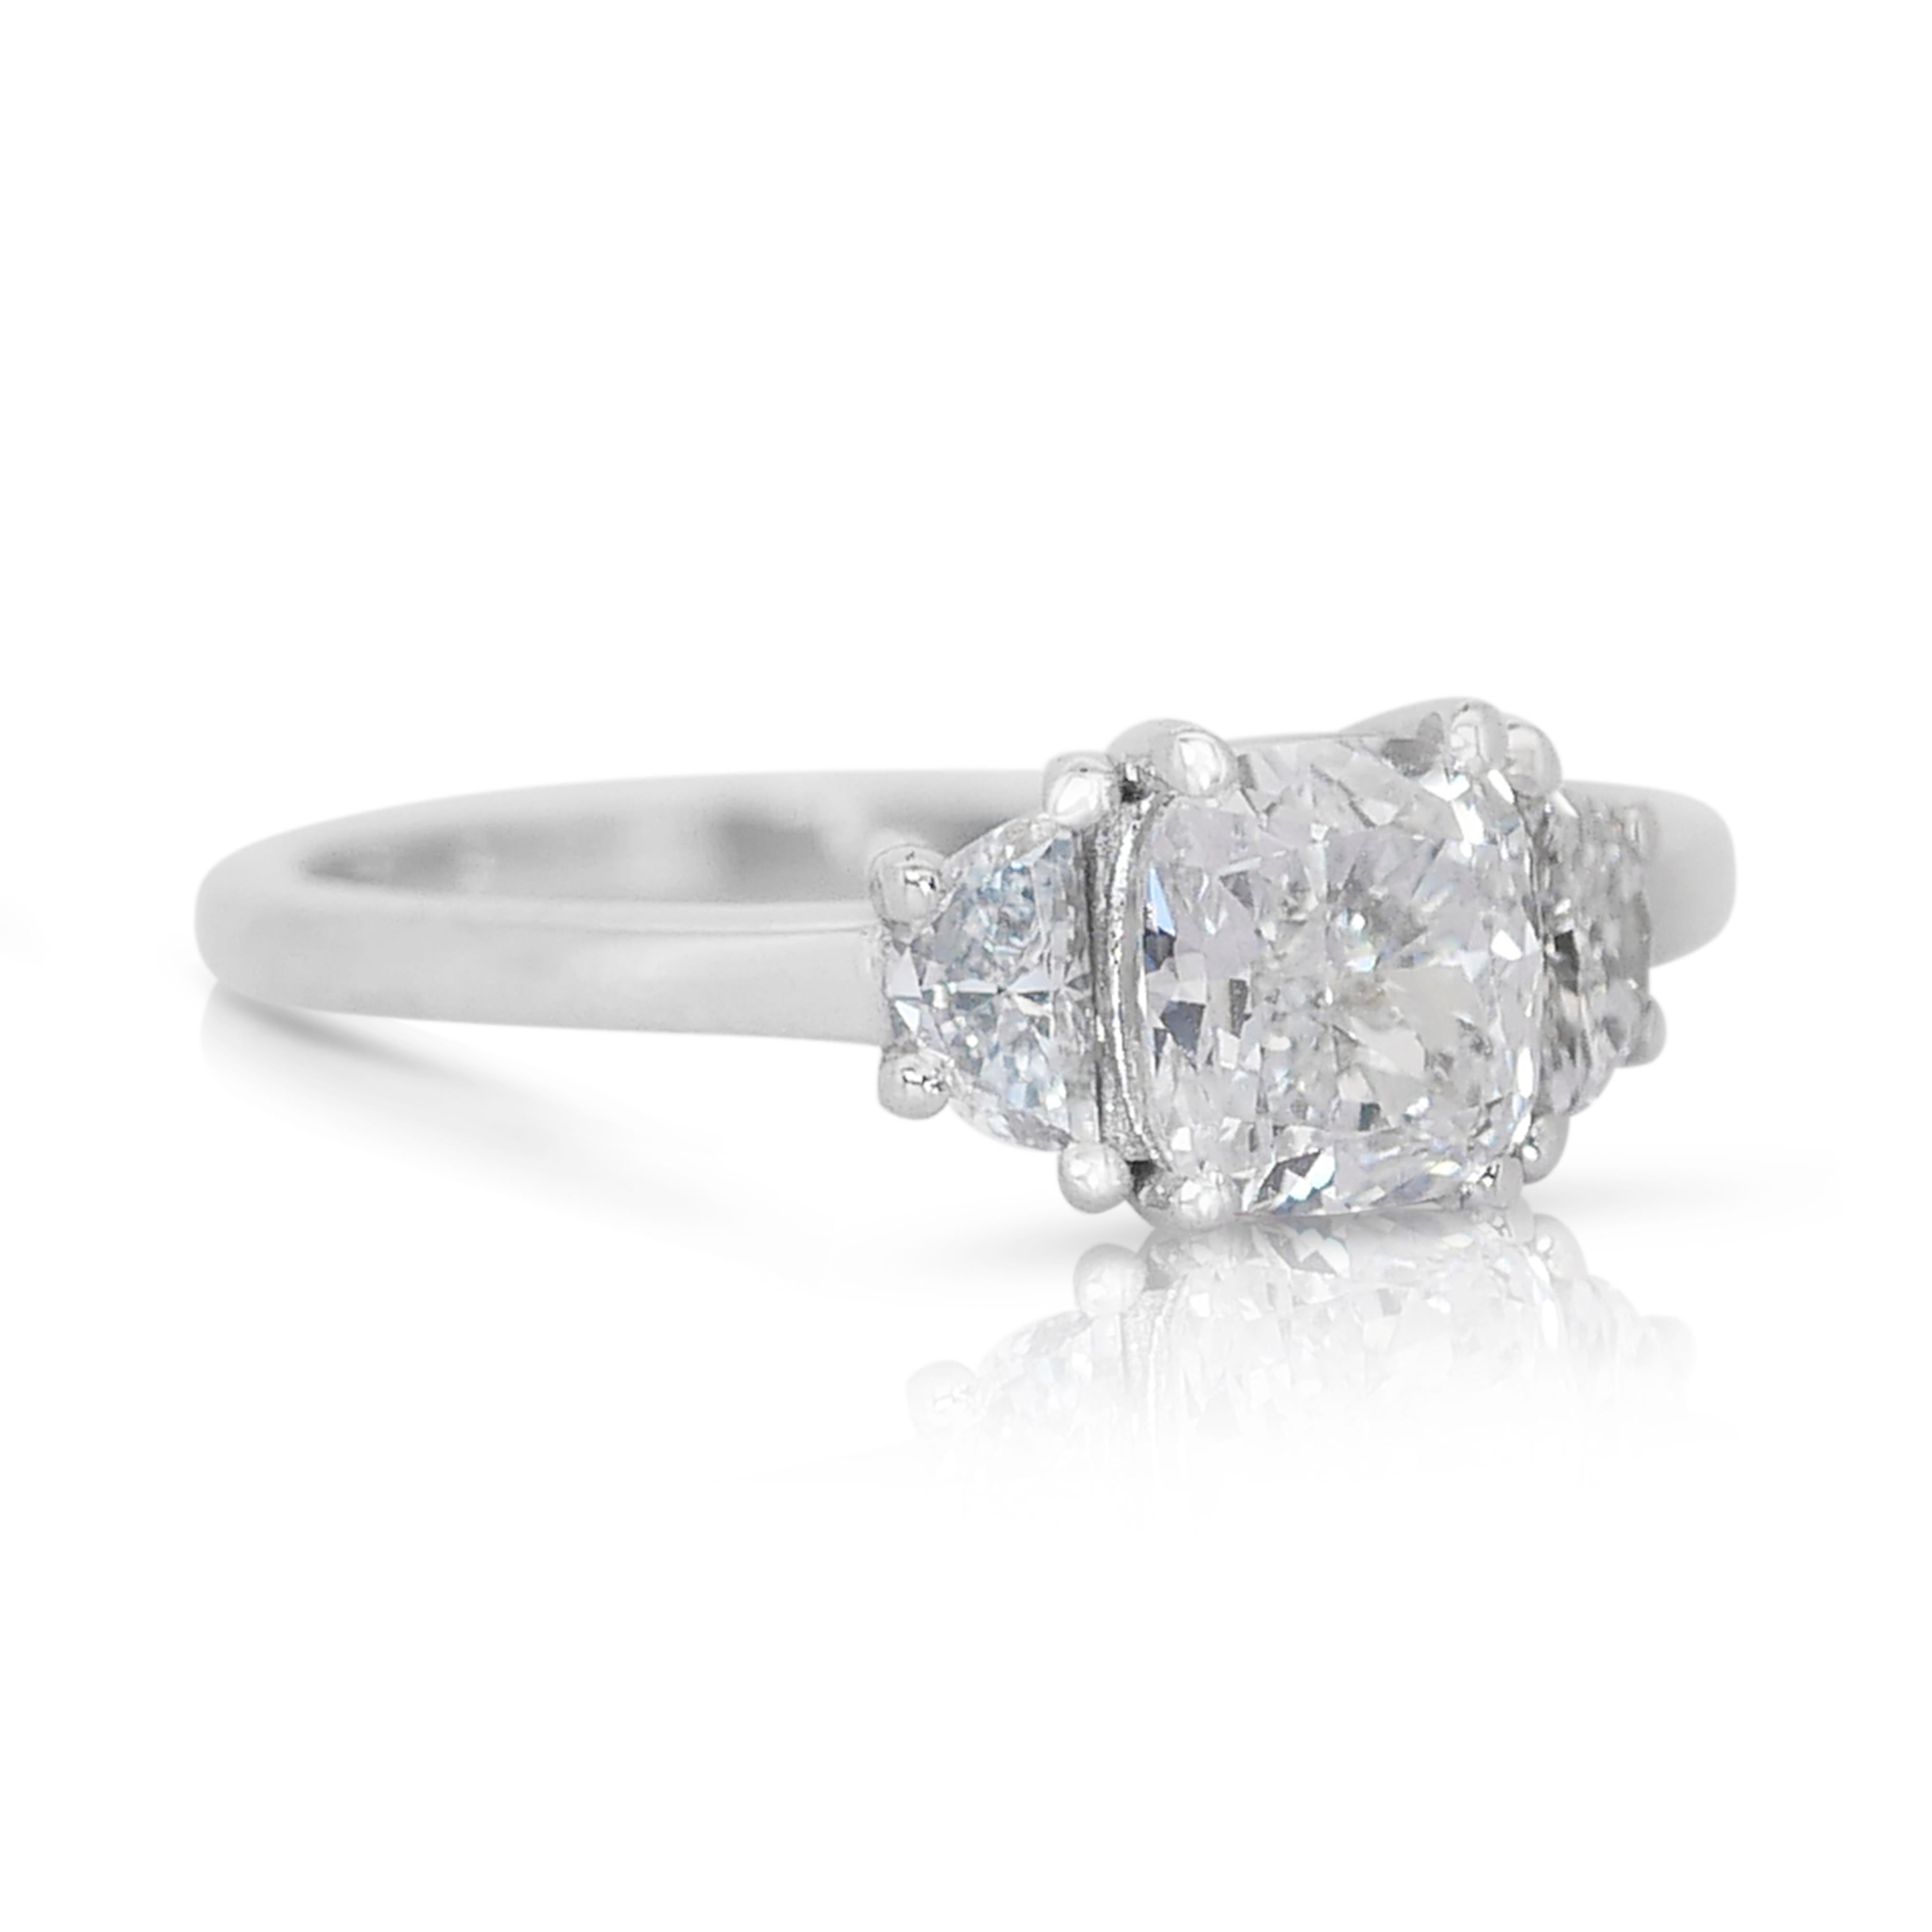 1,25 Karat Ideal Cut Cushion und Halbmonde Diamantring 

Gönnen Sie sich die Schönheit der ewigen Liebe mit unserem 3-Stein-Diamantring. Dieser Ring wird von GIA- und AIG-Zertifikaten begleitet, die seine außergewöhnliche Qualität und Echtheit